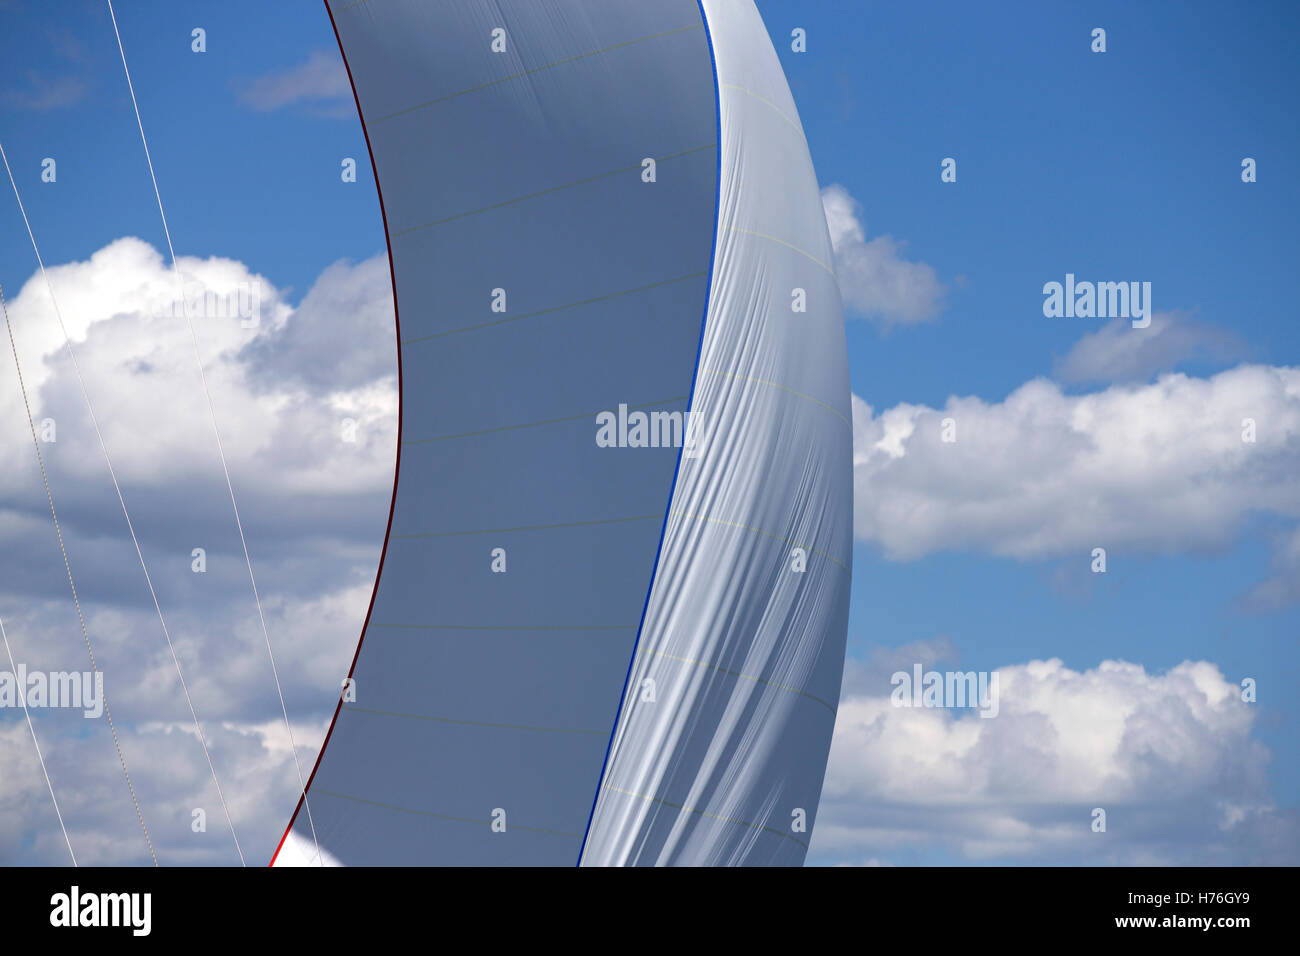 Dettaglio della vela e spinnaker di classic yacht racing Foto Stock